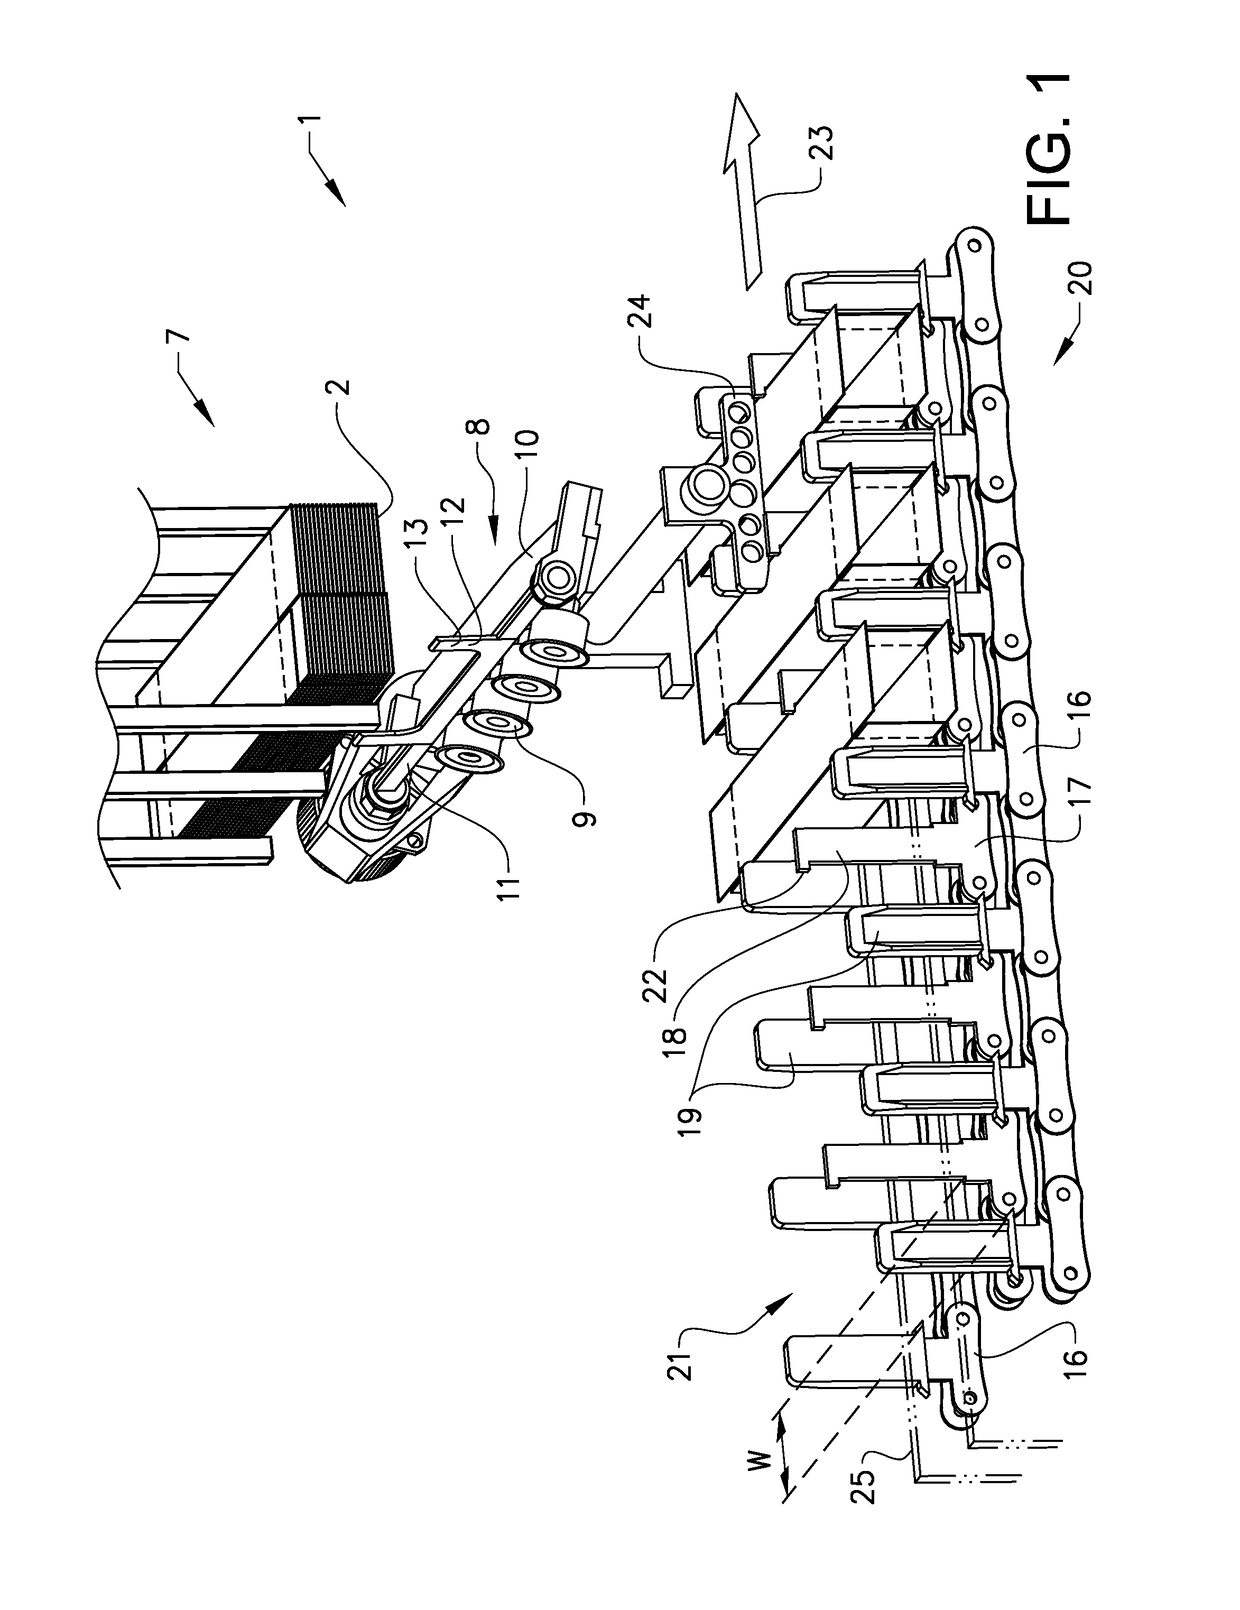 Carton feeder device and method for feeding a carton to a conveyor track